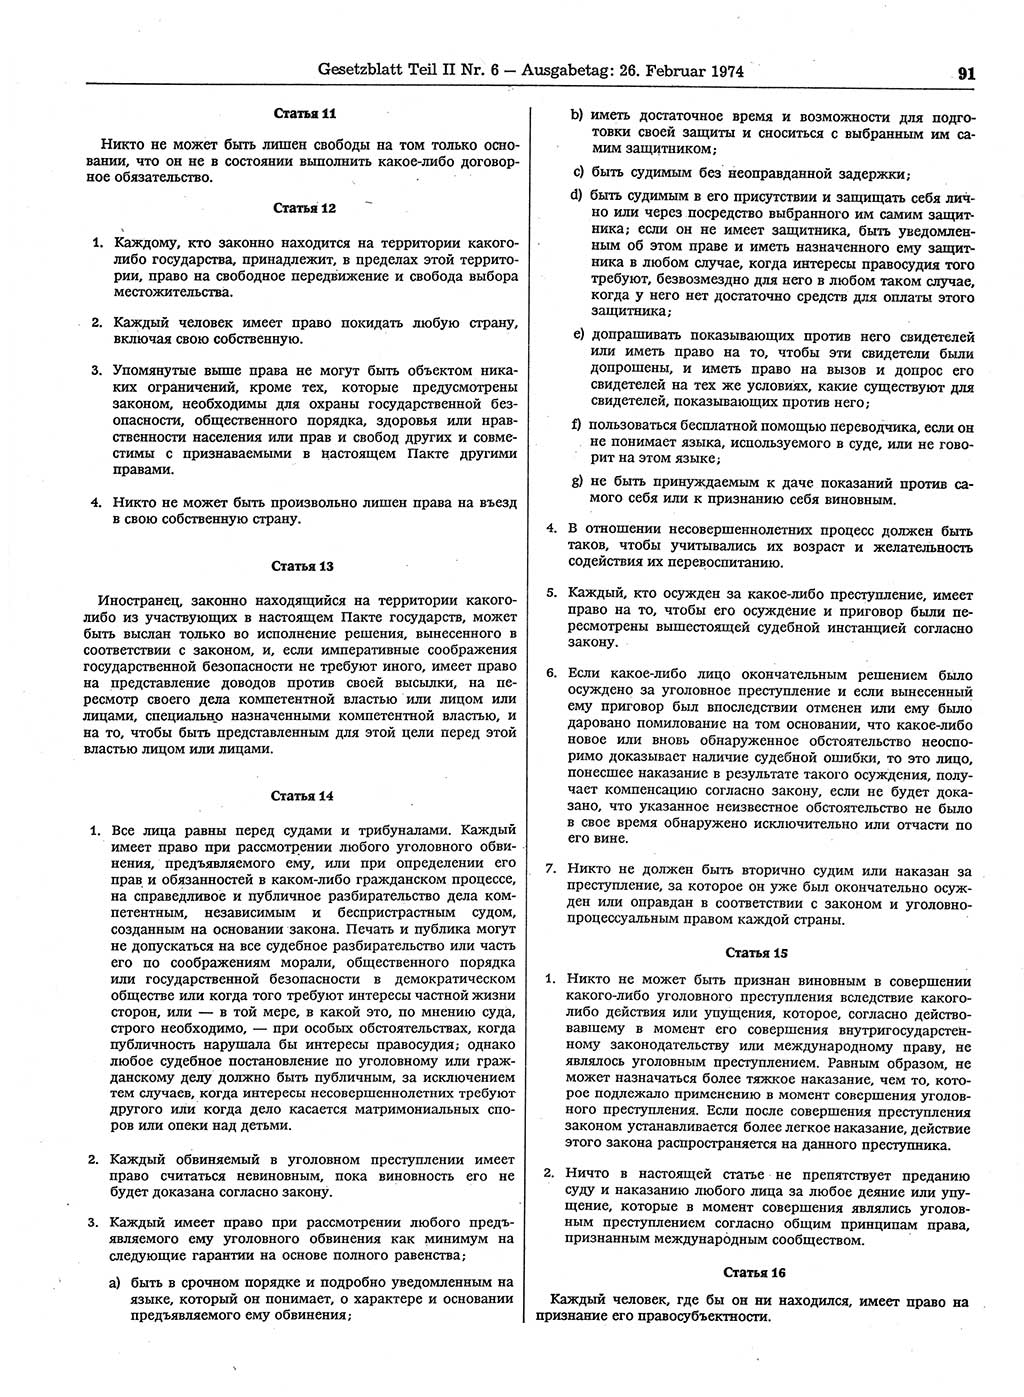 Gesetzblatt (GBl.) der Deutschen Demokratischen Republik (DDR) Teil ⅠⅠ 1974, Seite 91 (GBl. DDR ⅠⅠ 1974, S. 91)